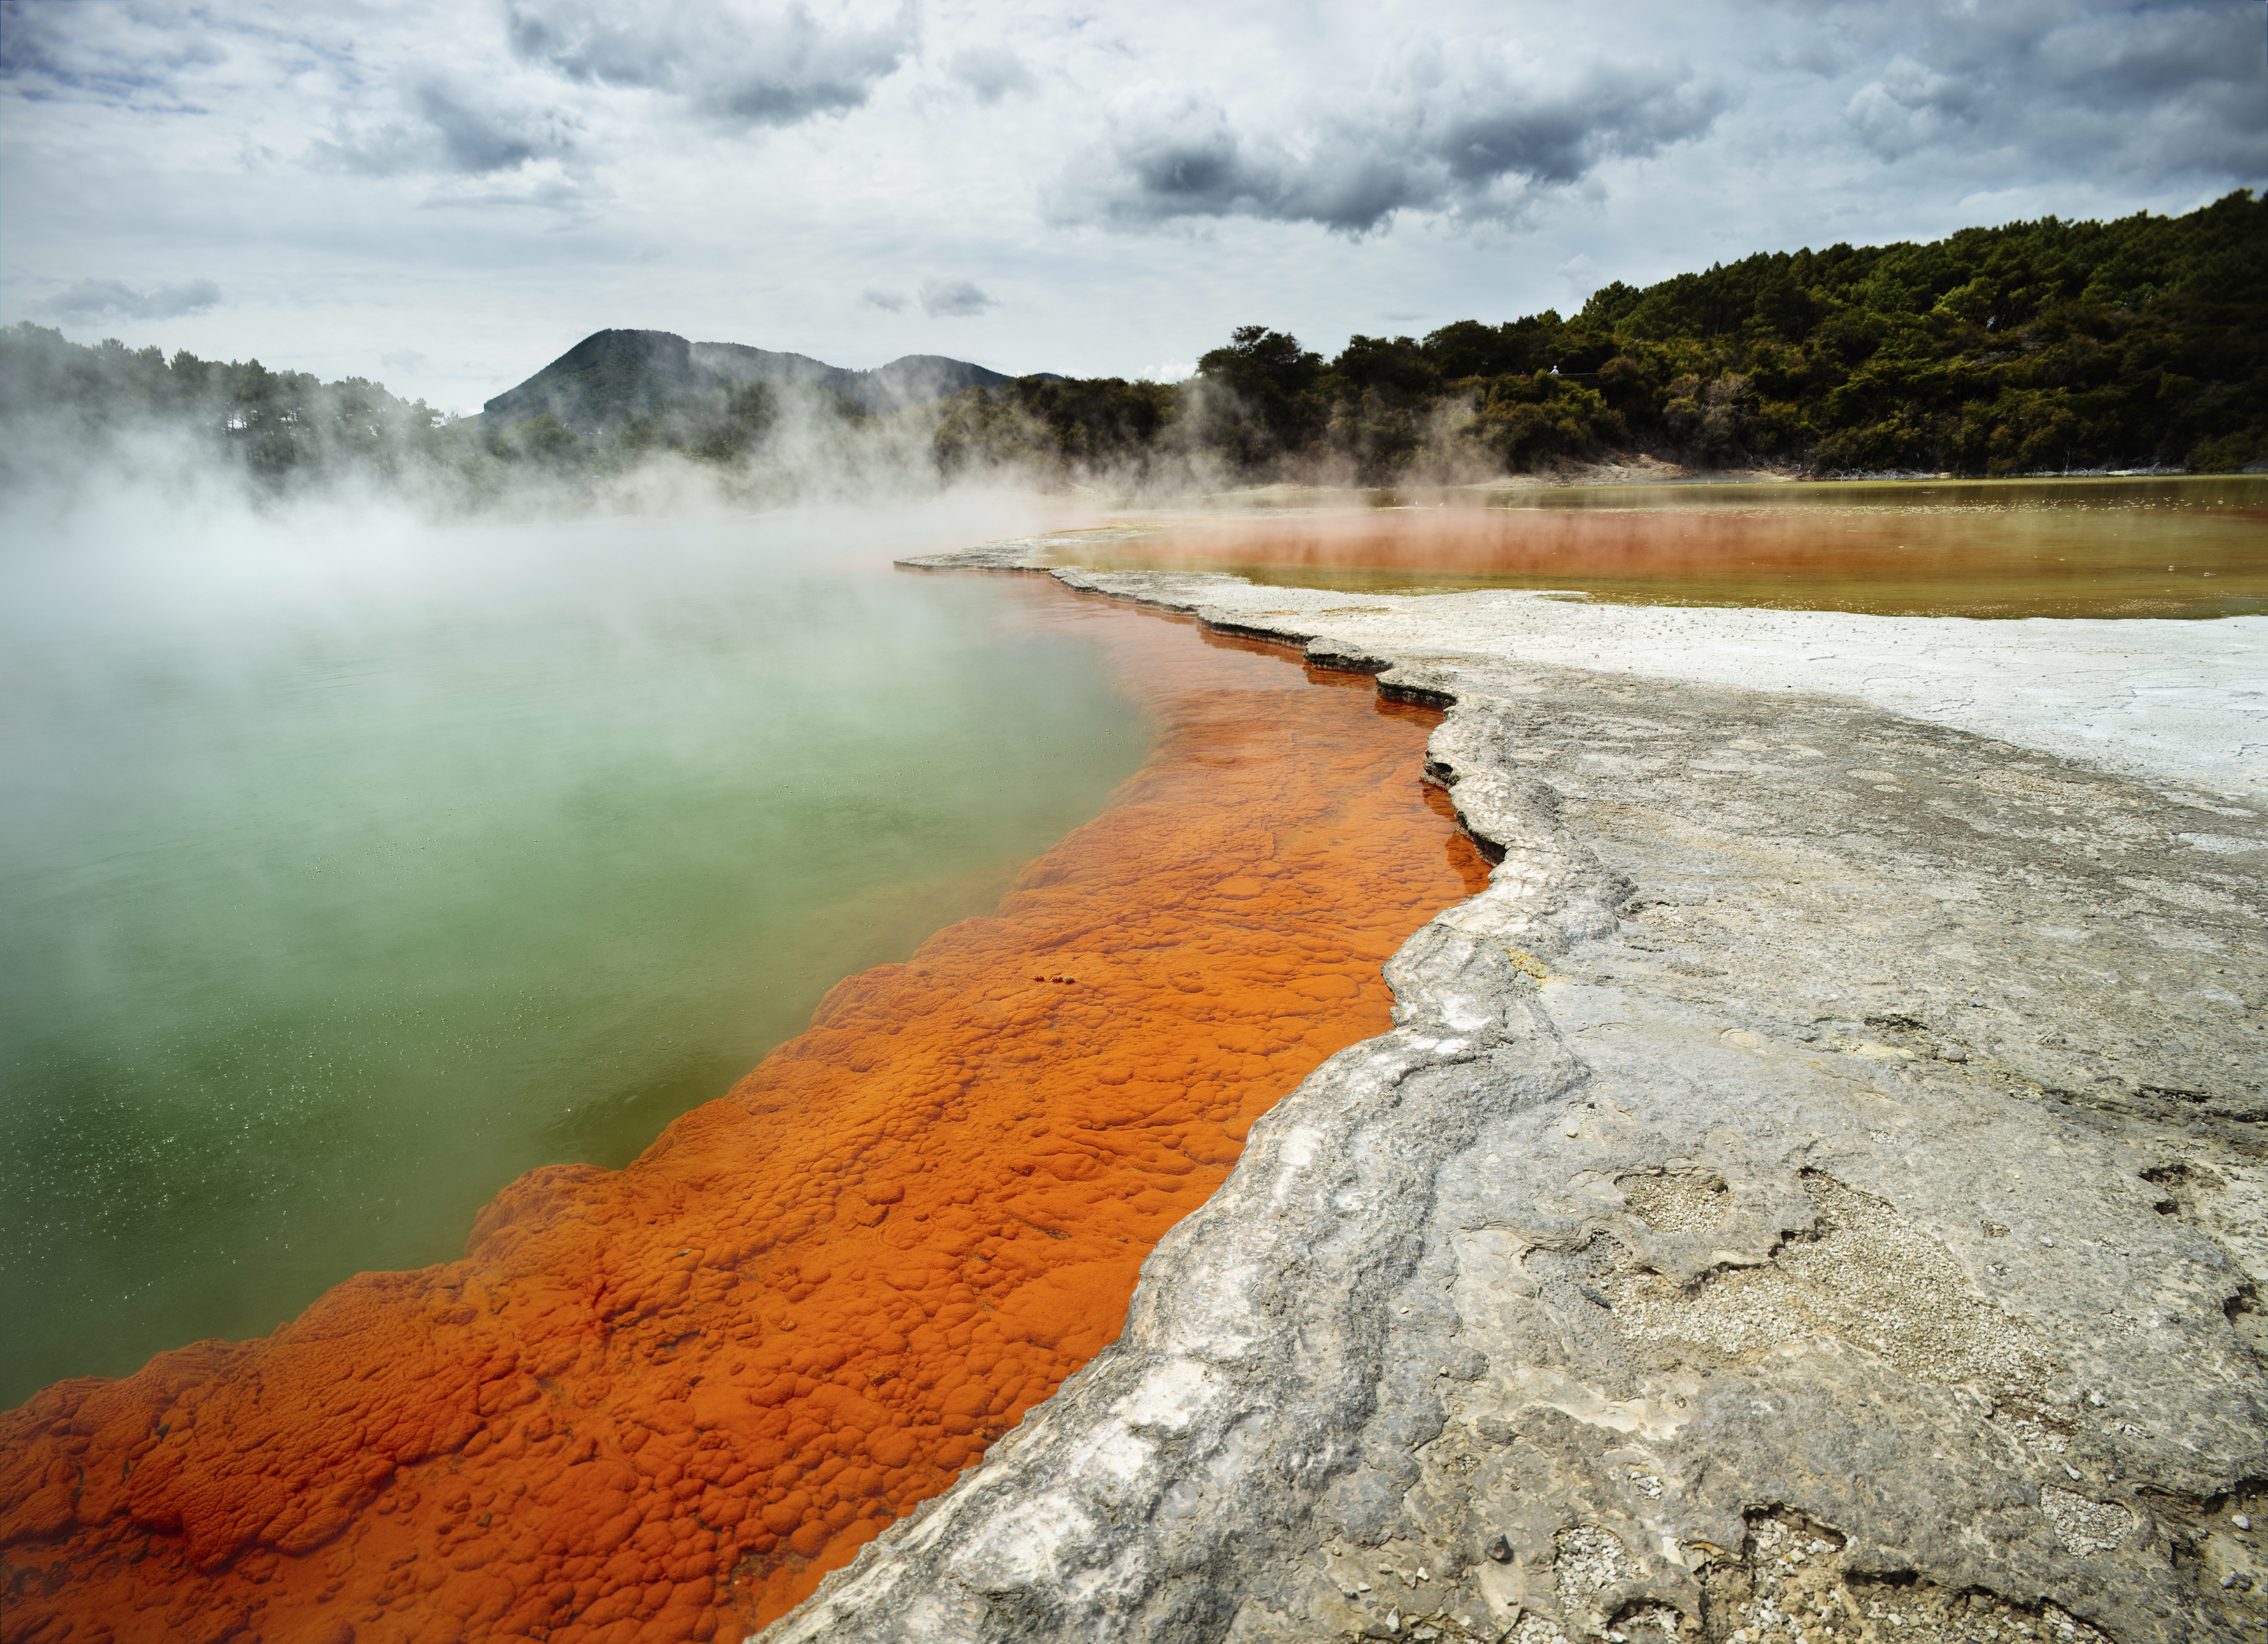 Geothermal lakes at Rotorua, New Zealand